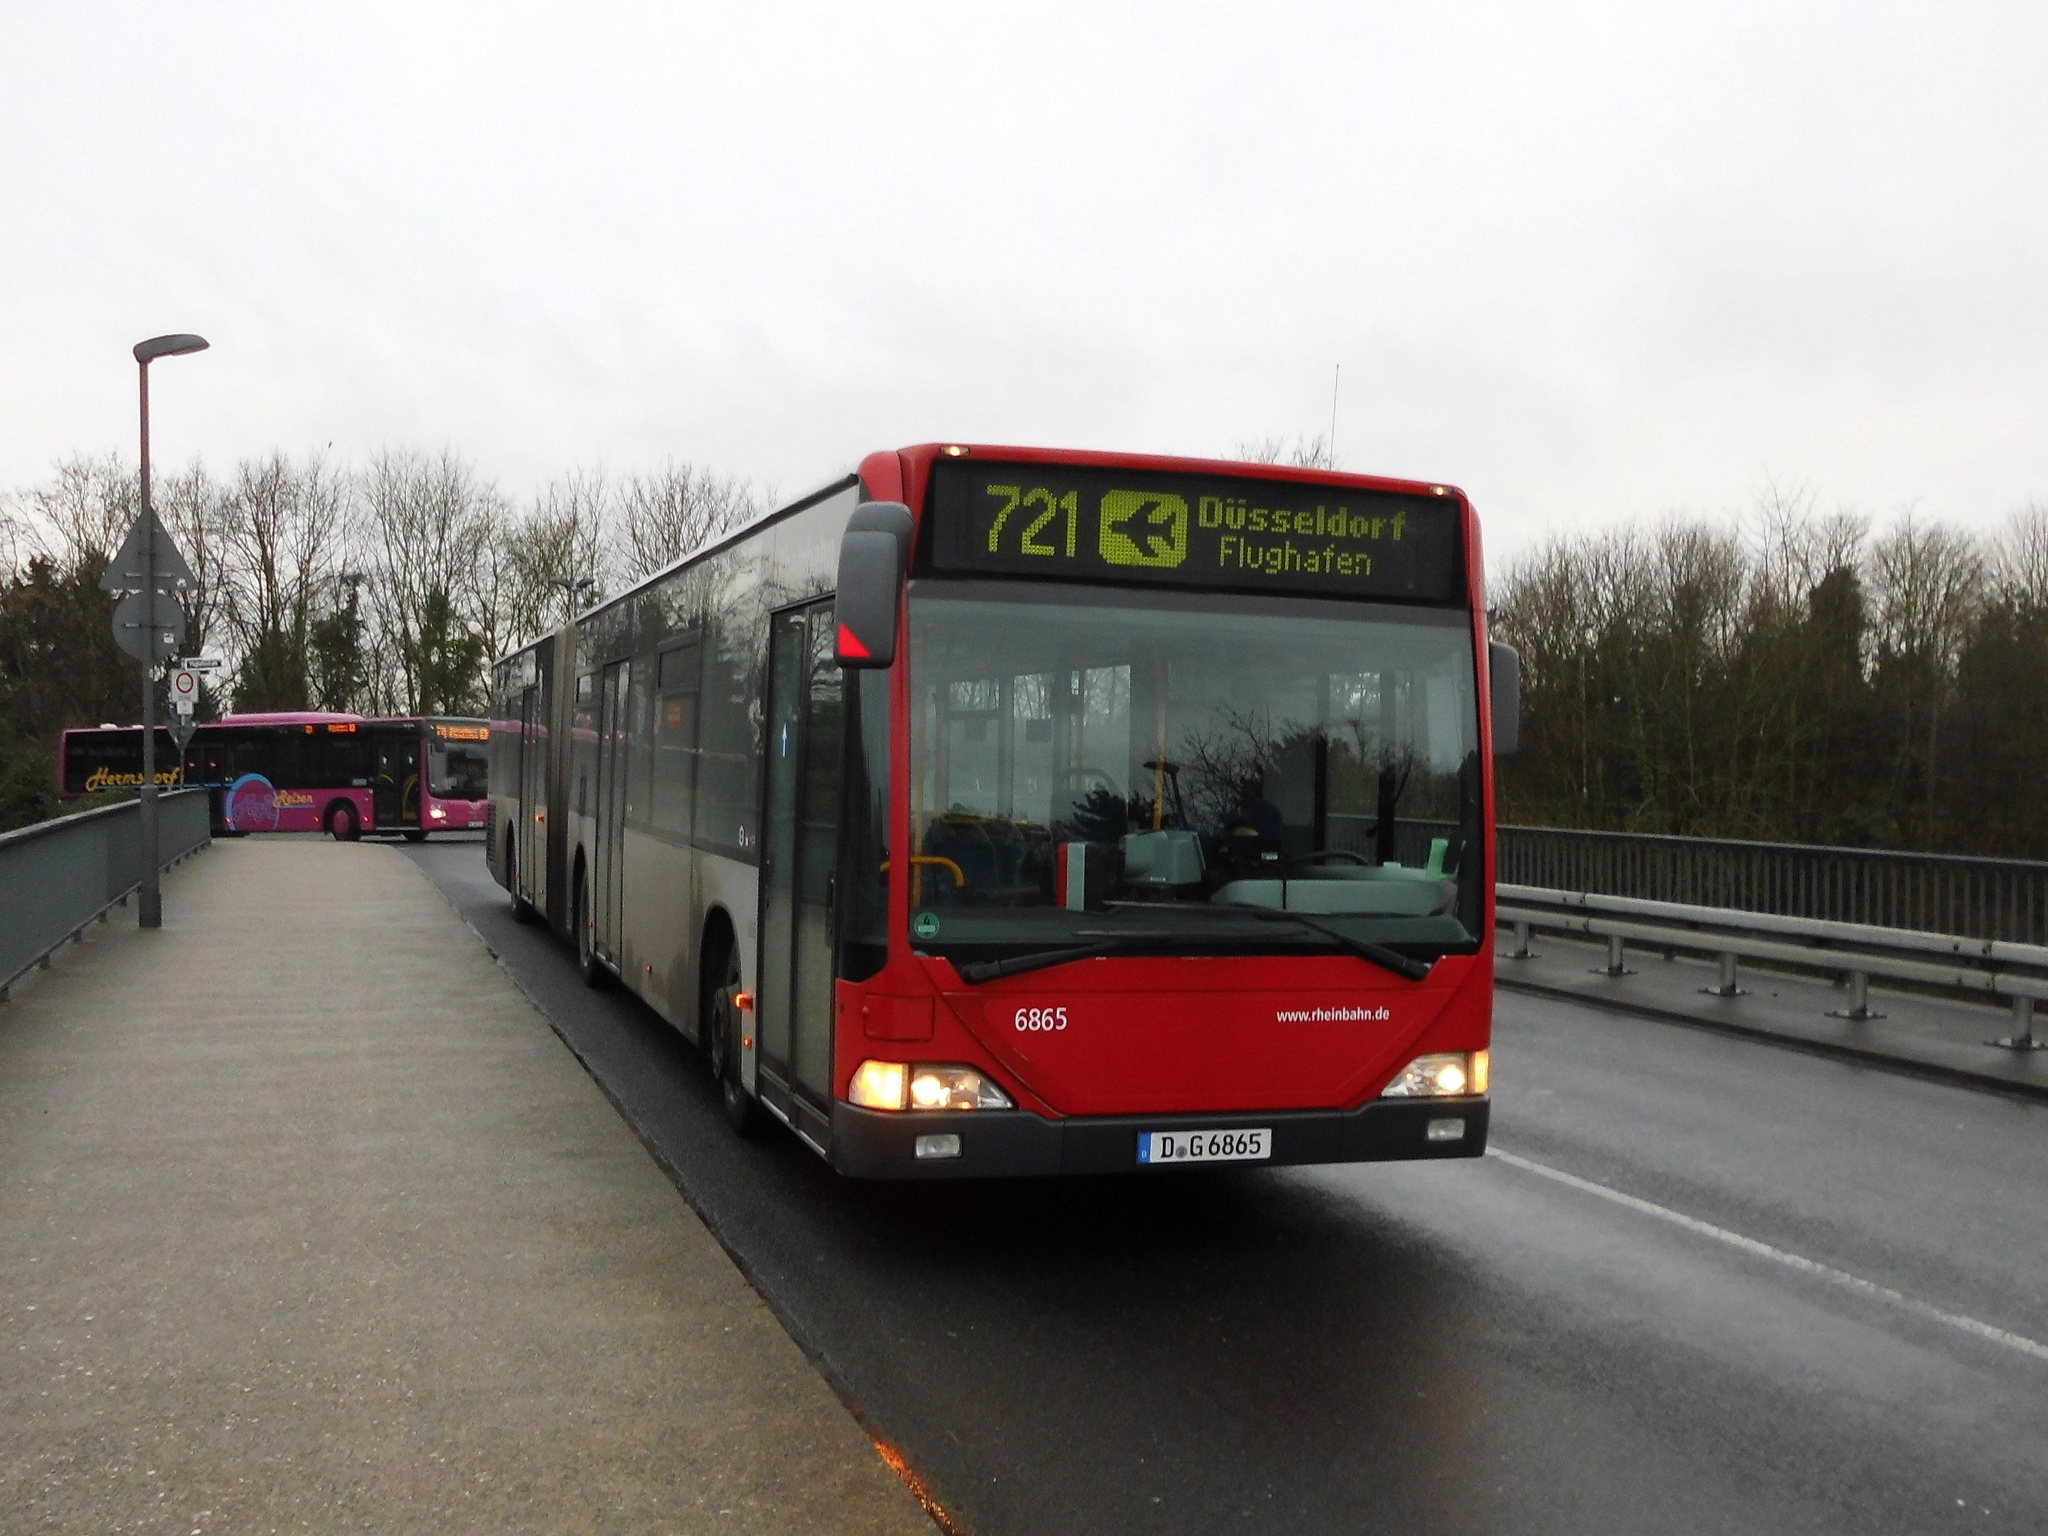 Λεωφορεία Diesel από την Rheinbahn - Αντιρρήσεις από CDU και SPD - Θέλουν ηλεκτρικά